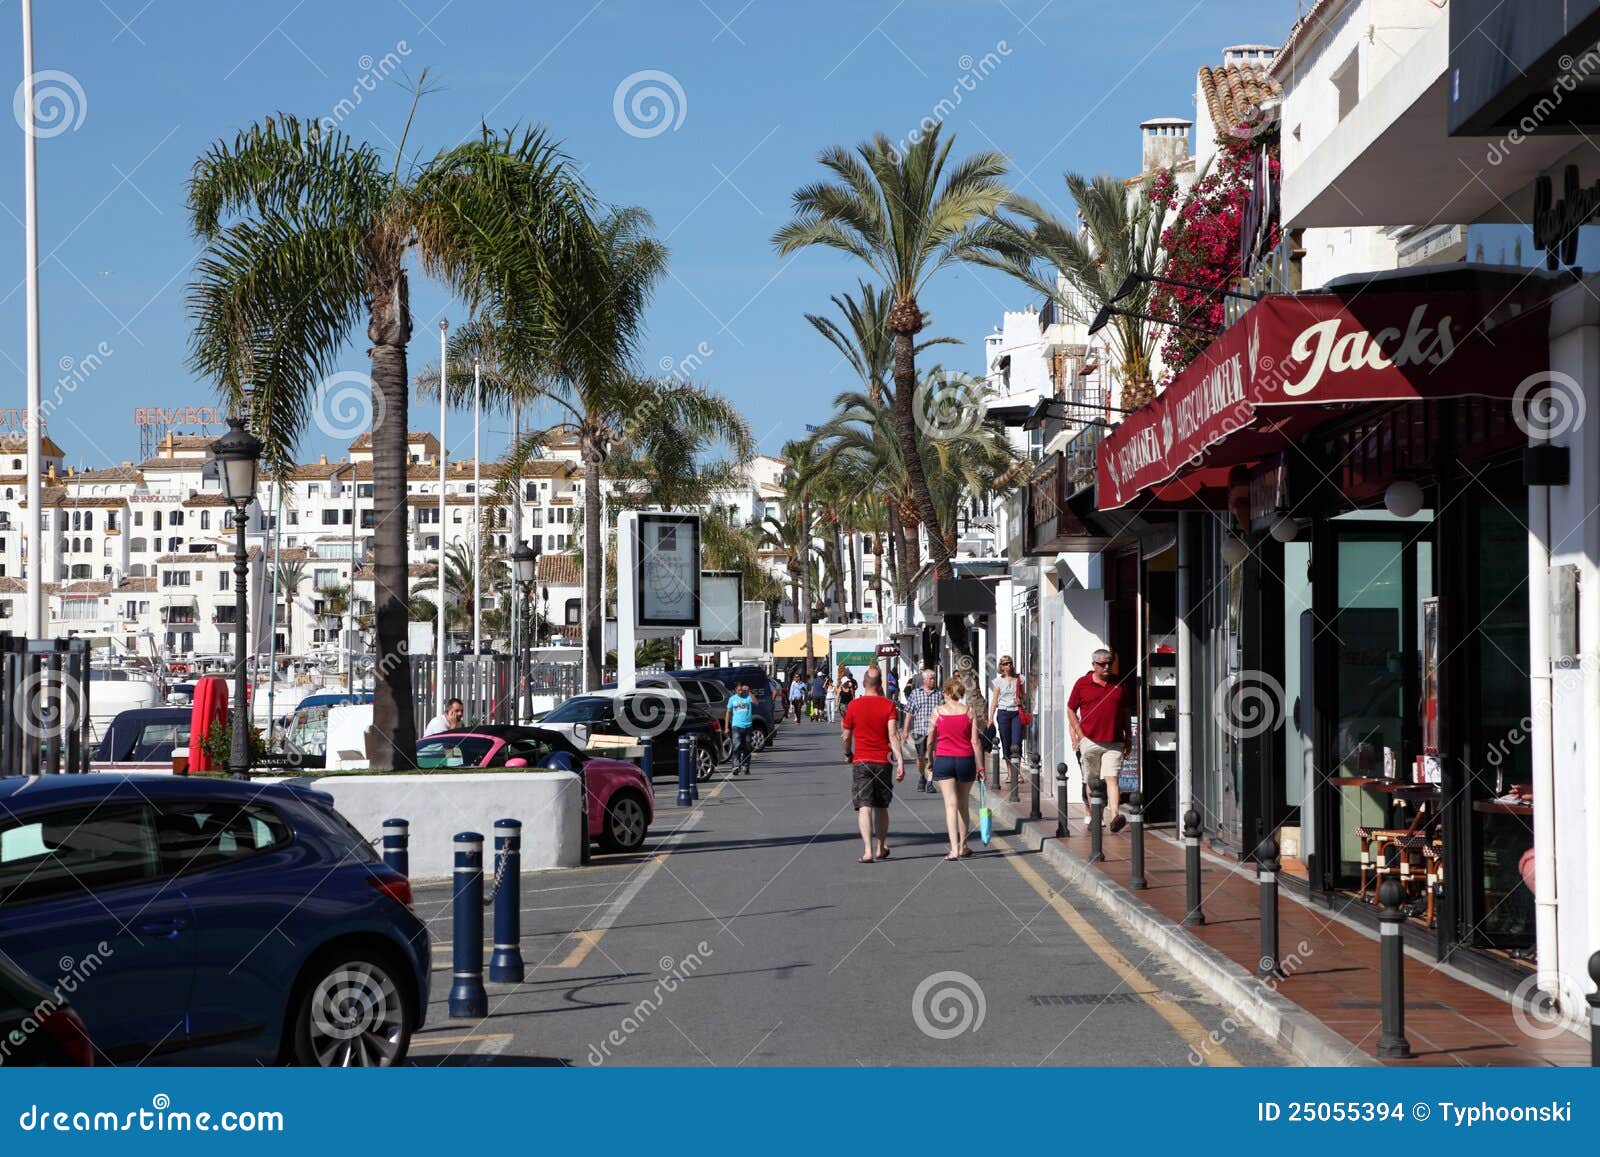 Marbella Puerto Spain Jul 2018 Luxury Stock Photo 1139890631